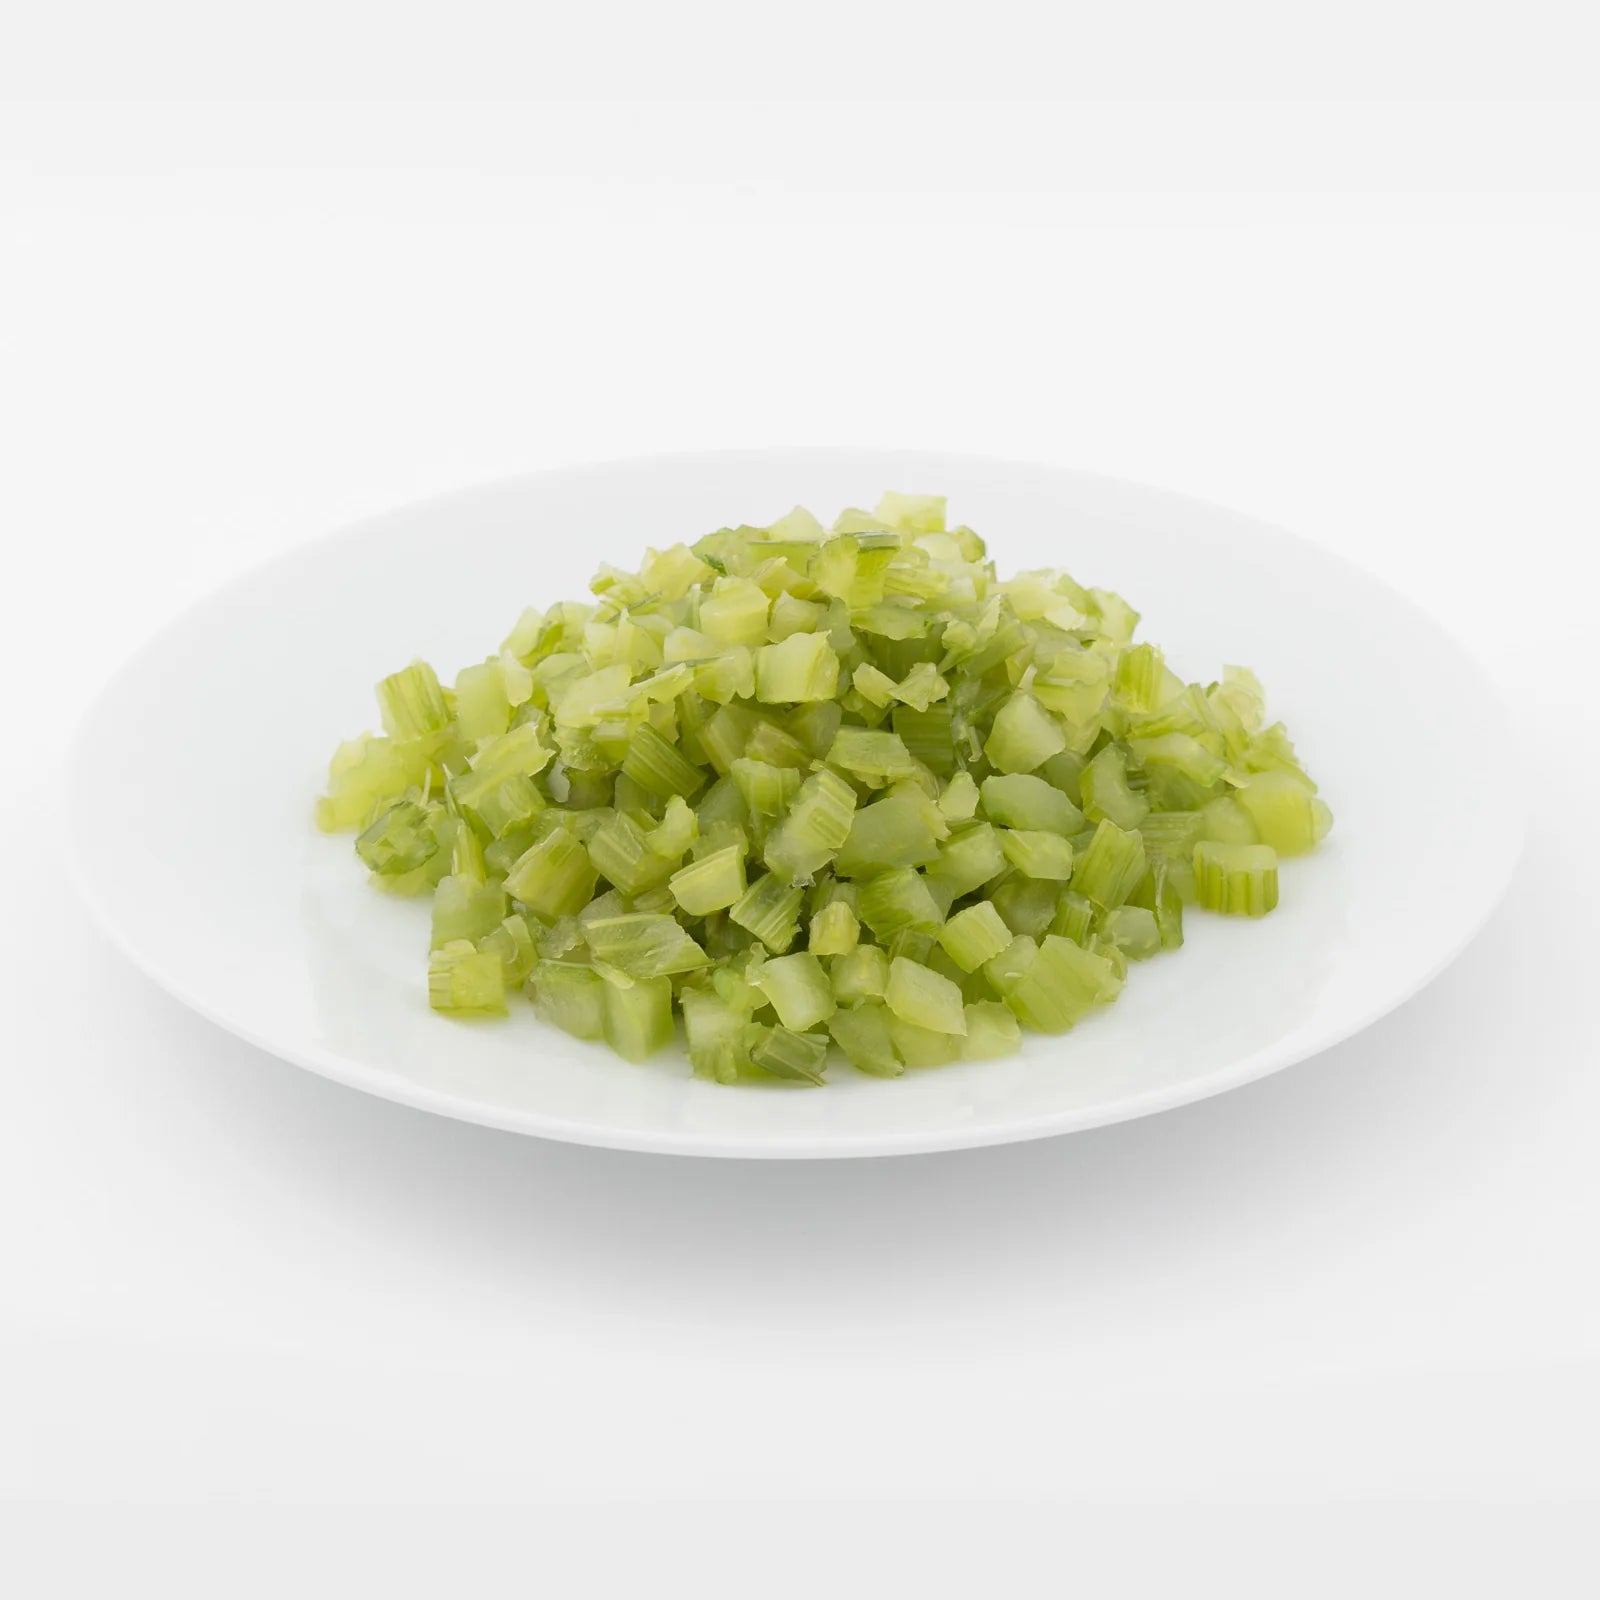 Below Zero - IQF Diced Celery